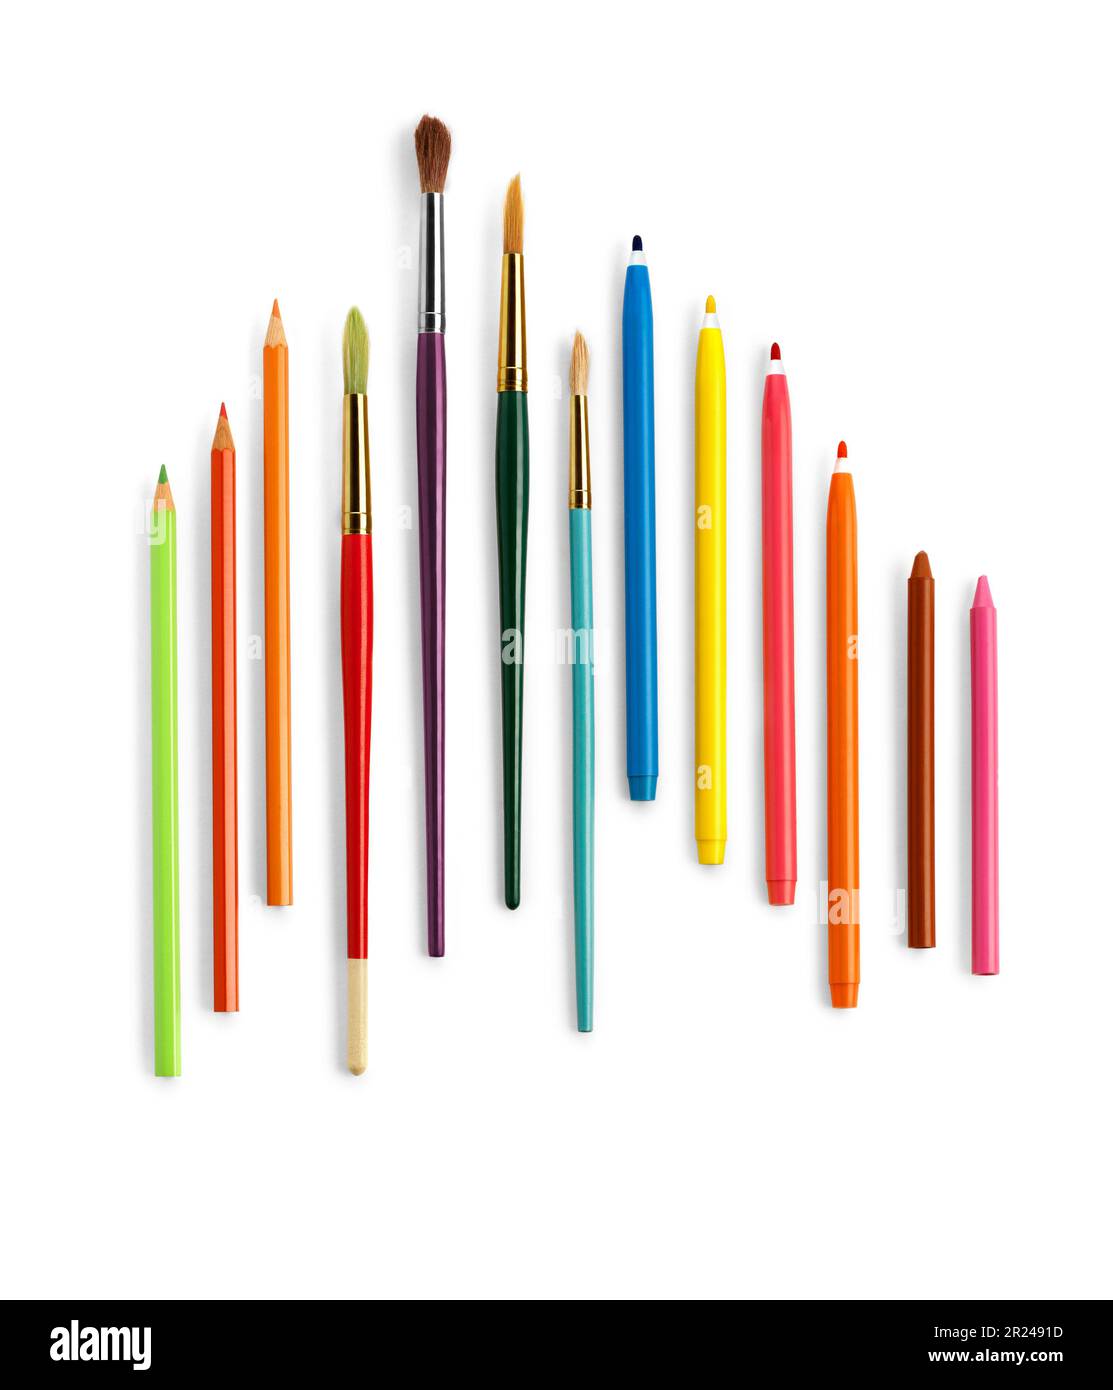 Jeu de crayons et crayons colorés sur fond blanc. Masque Banque D'Images